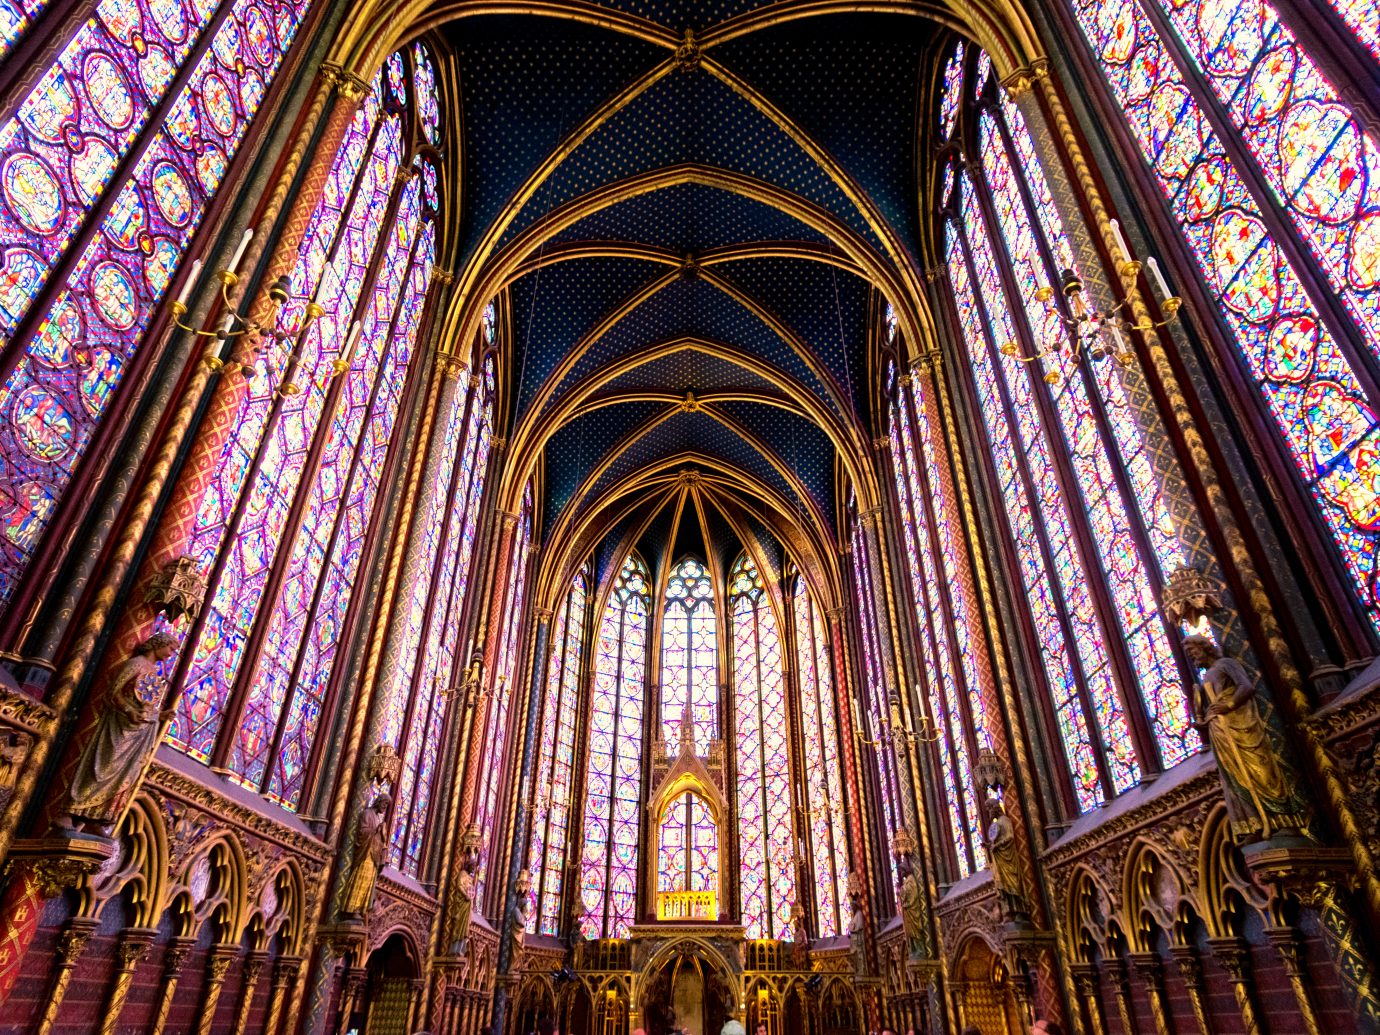 Sainte-Chapelle in Paris, France.